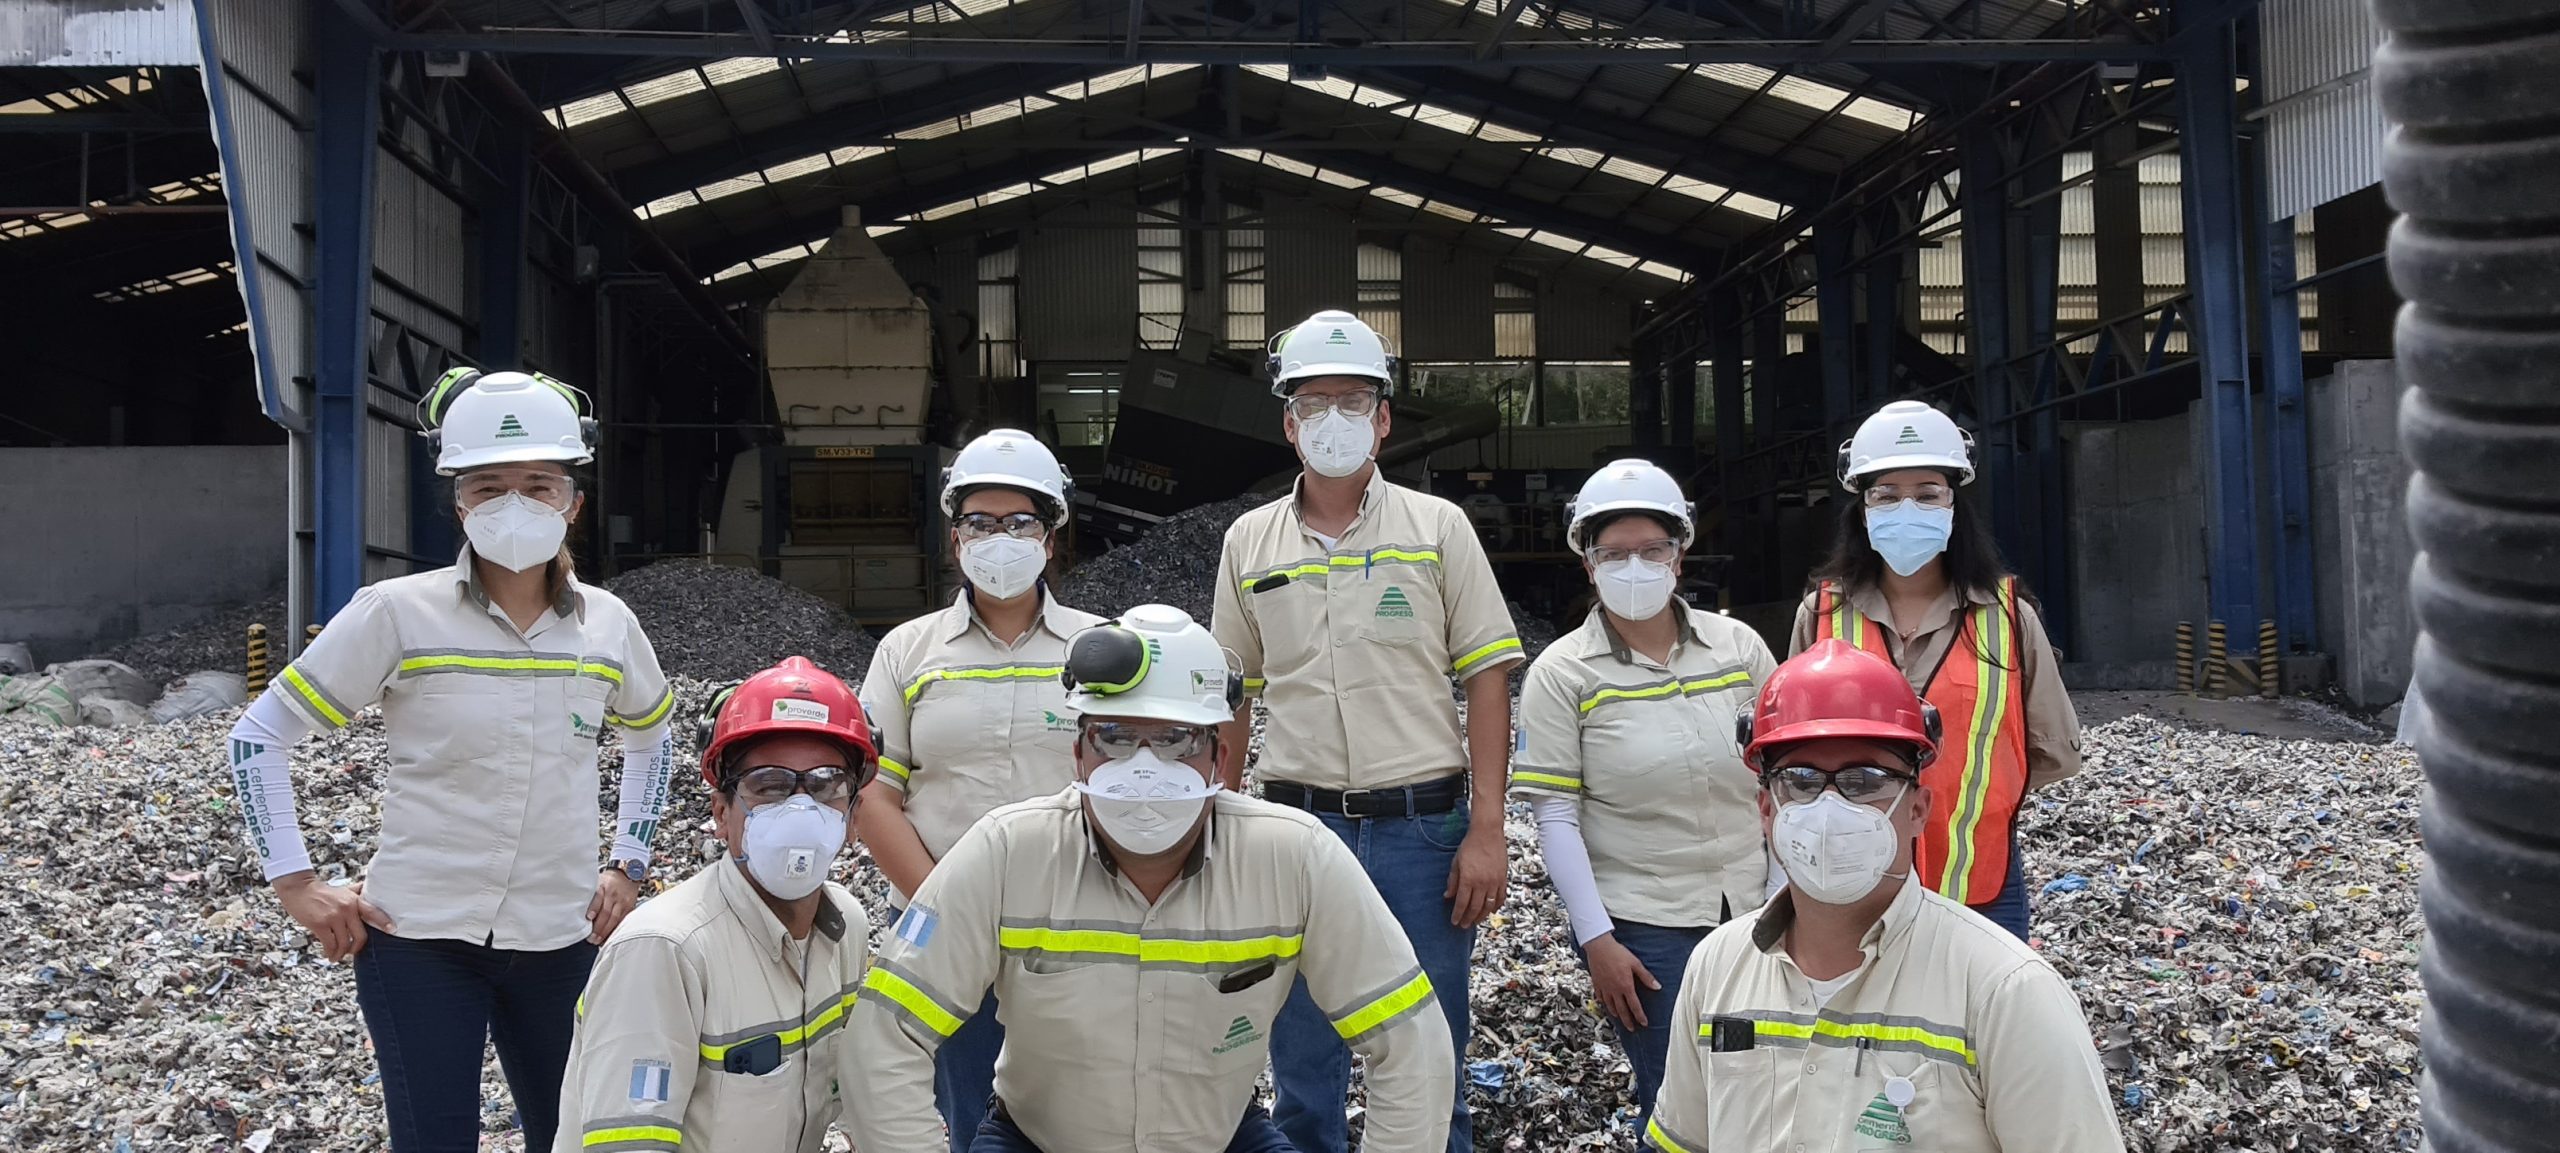 proverde cempro guatemala cementos progreso coprocesamiento de residuos mejorar medio ambiente